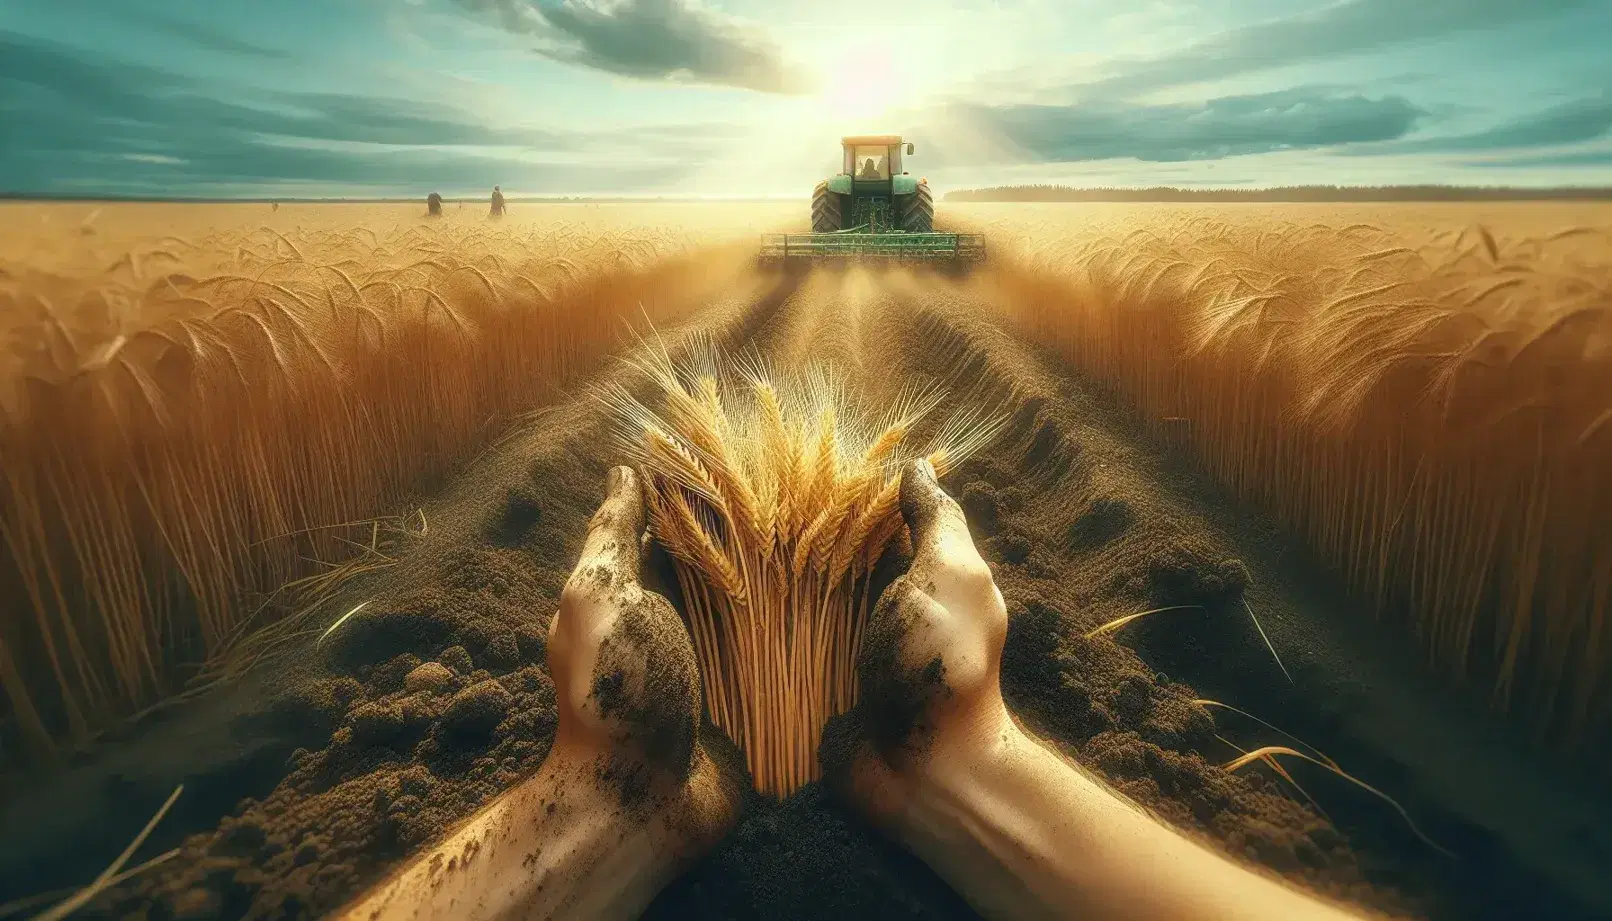 Mani sporche di terra raccolgono spighe dorate di grano in un campo lettone, con un trattore verde e mucche al pascolo sullo sfondo.